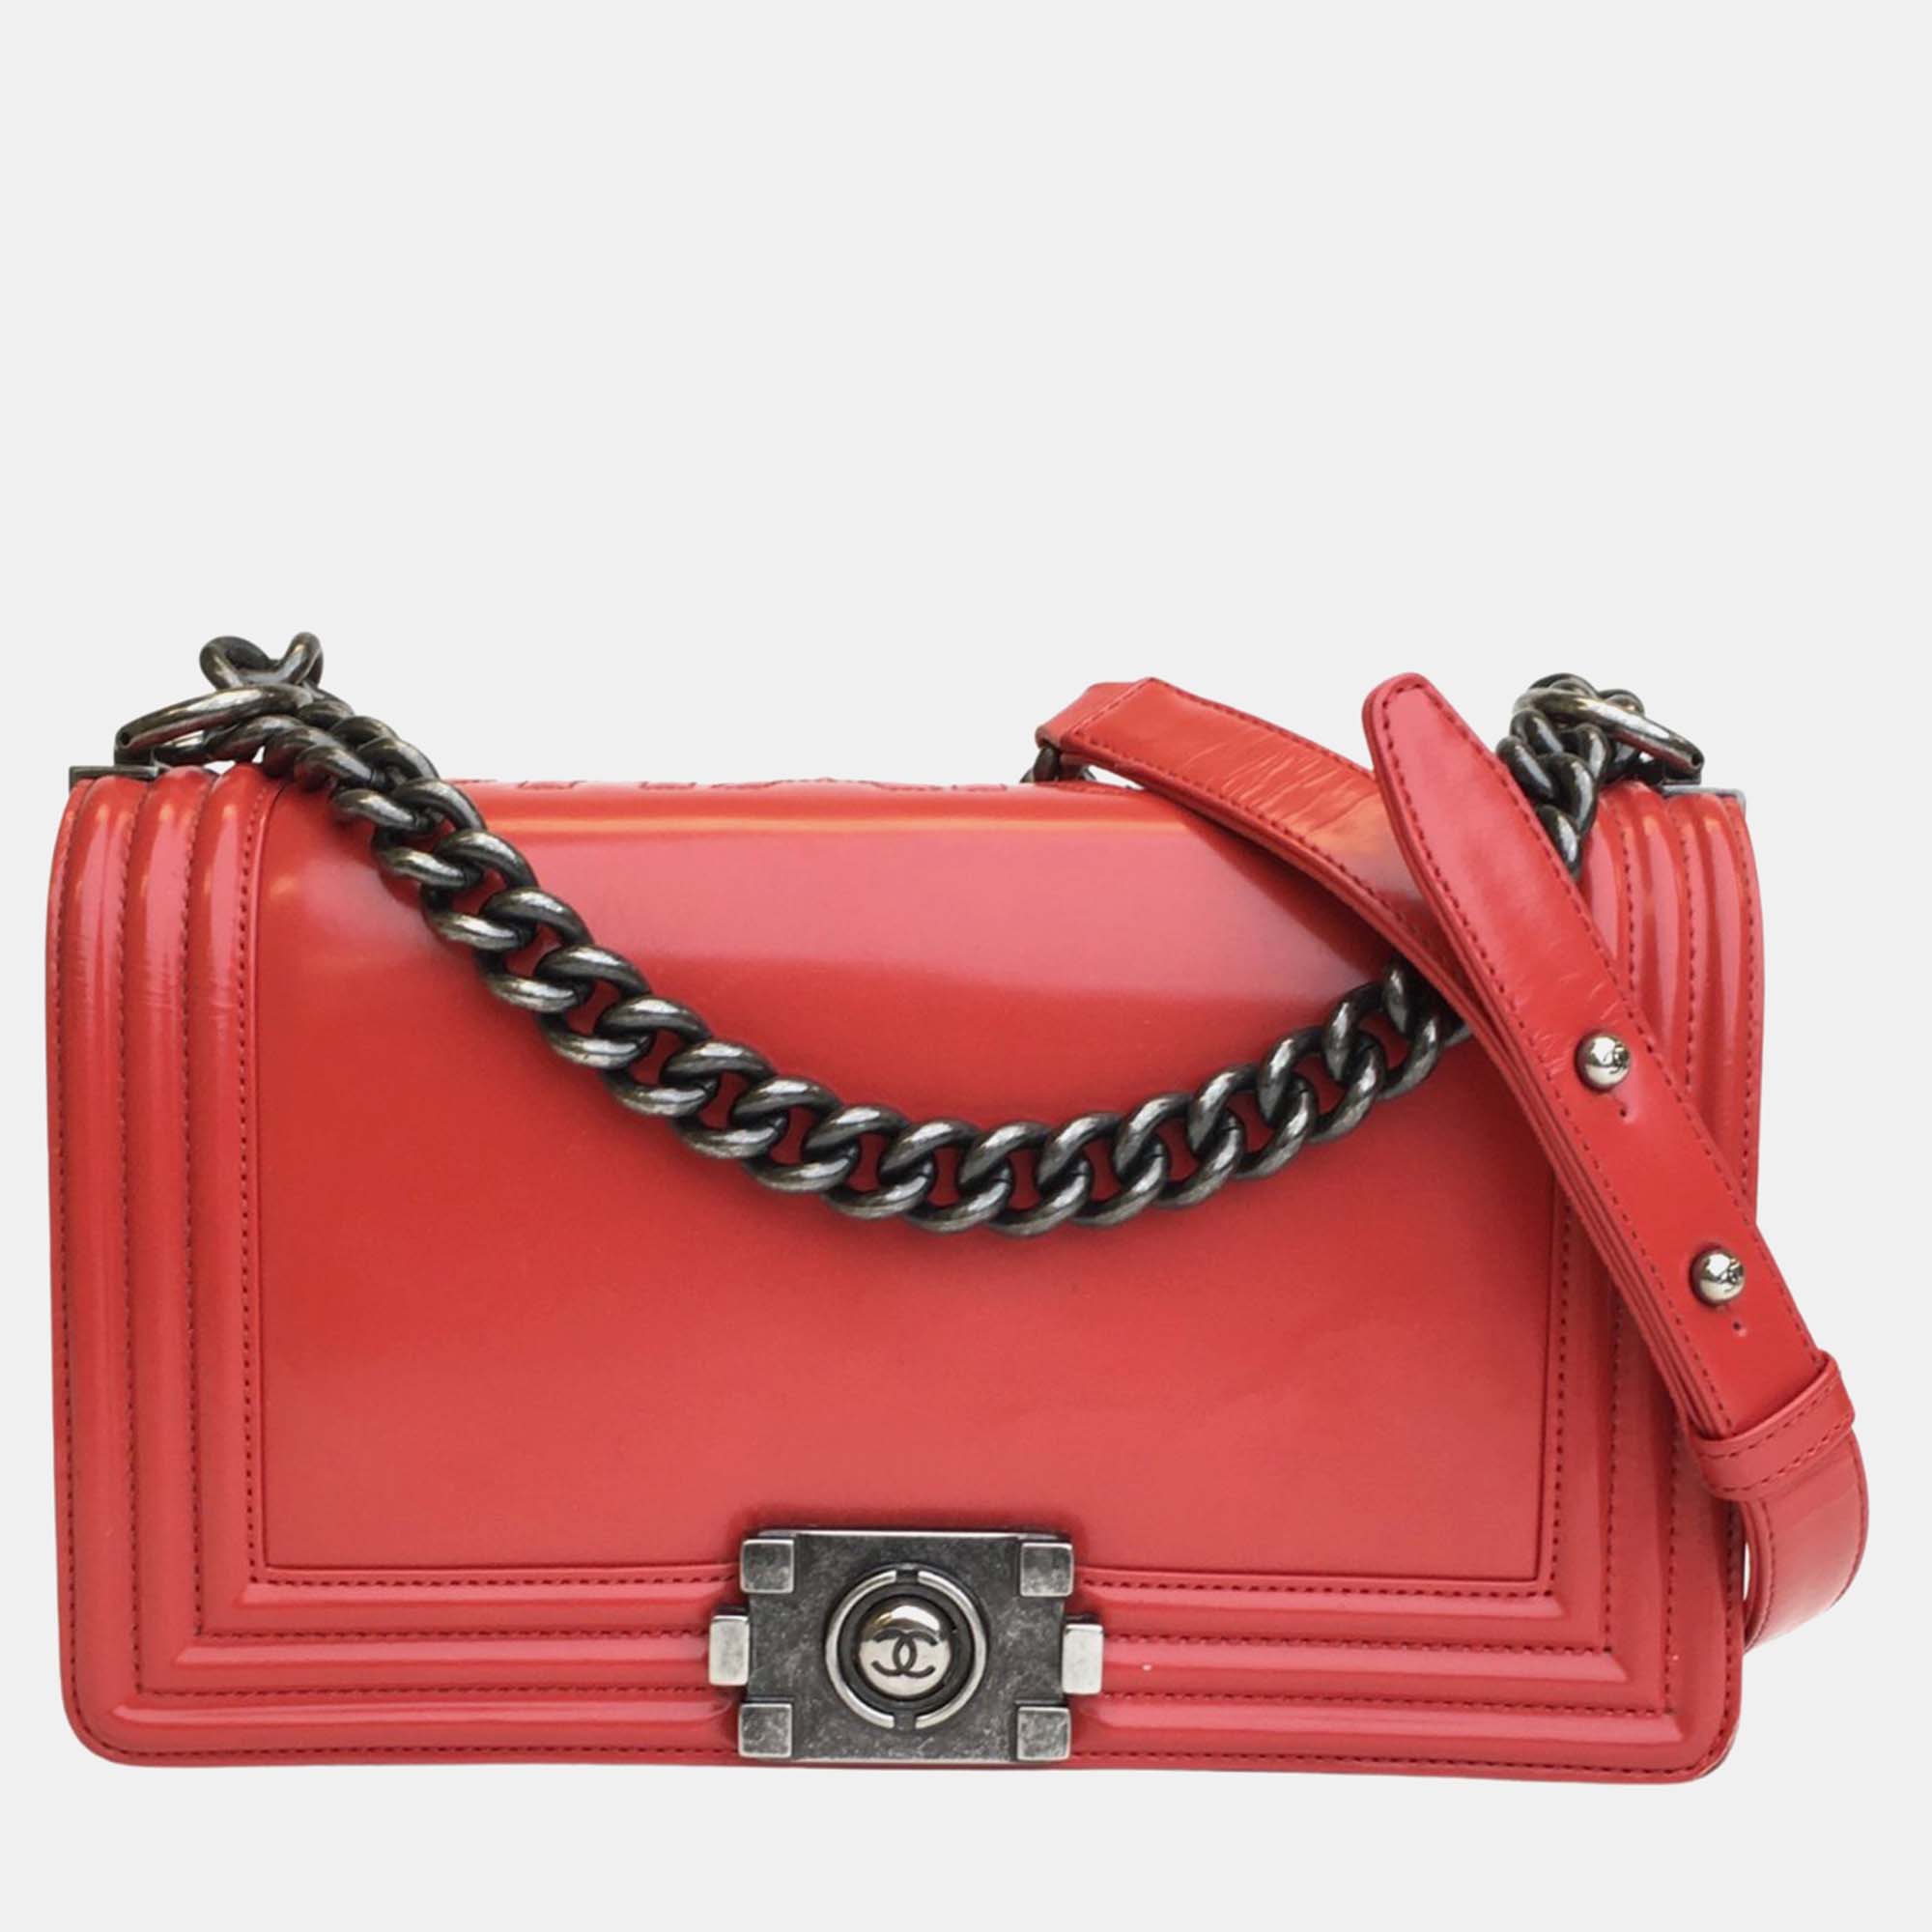 Chanel red patent leather medium boy shoulder bag